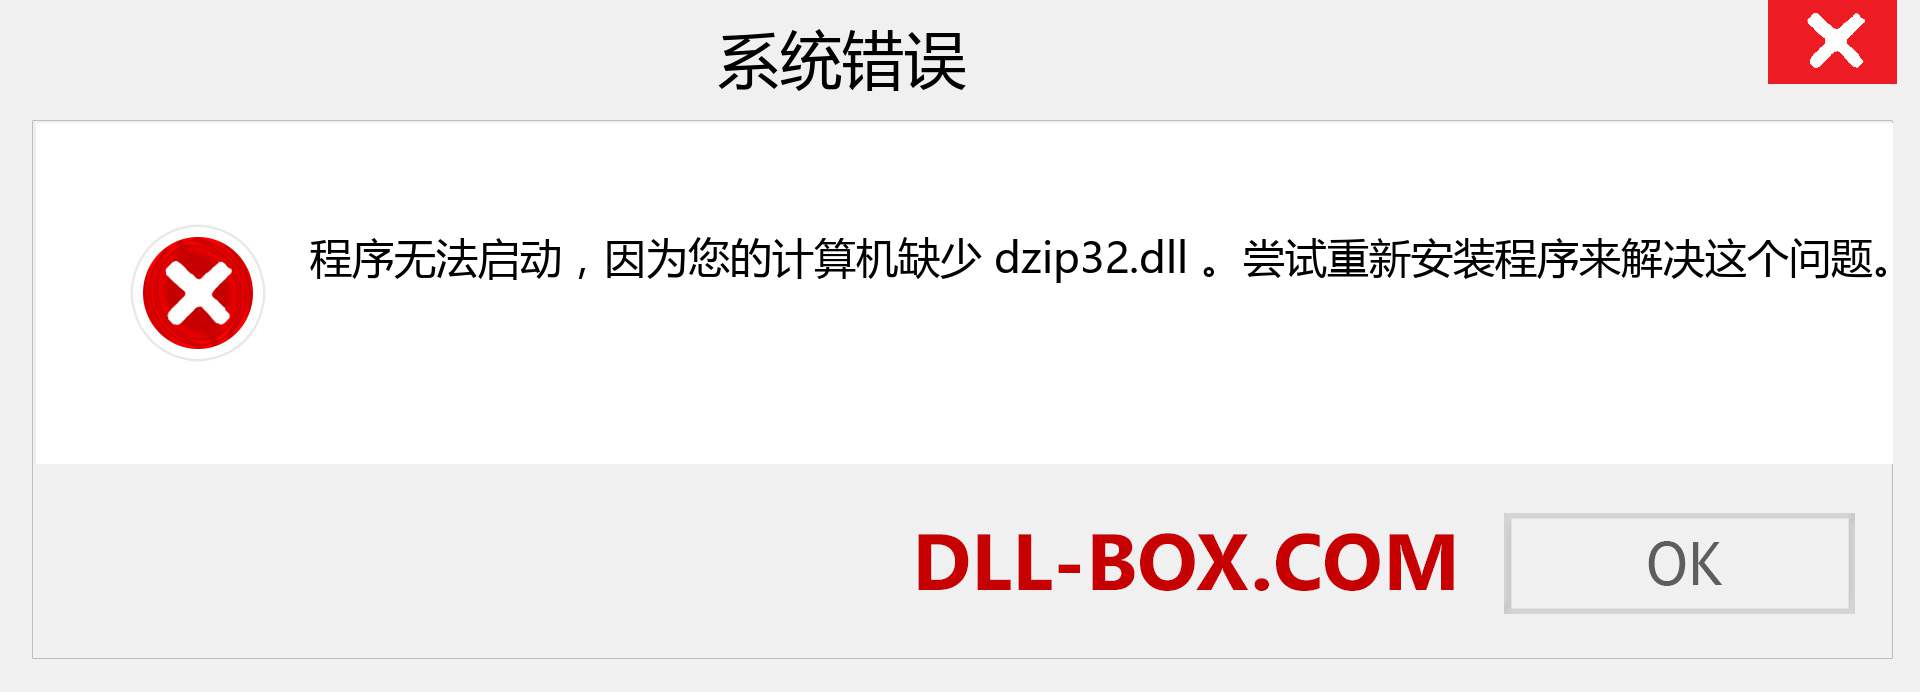 dzip32.dll 文件丢失？。 适用于 Windows 7、8、10 的下载 - 修复 Windows、照片、图像上的 dzip32 dll 丢失错误